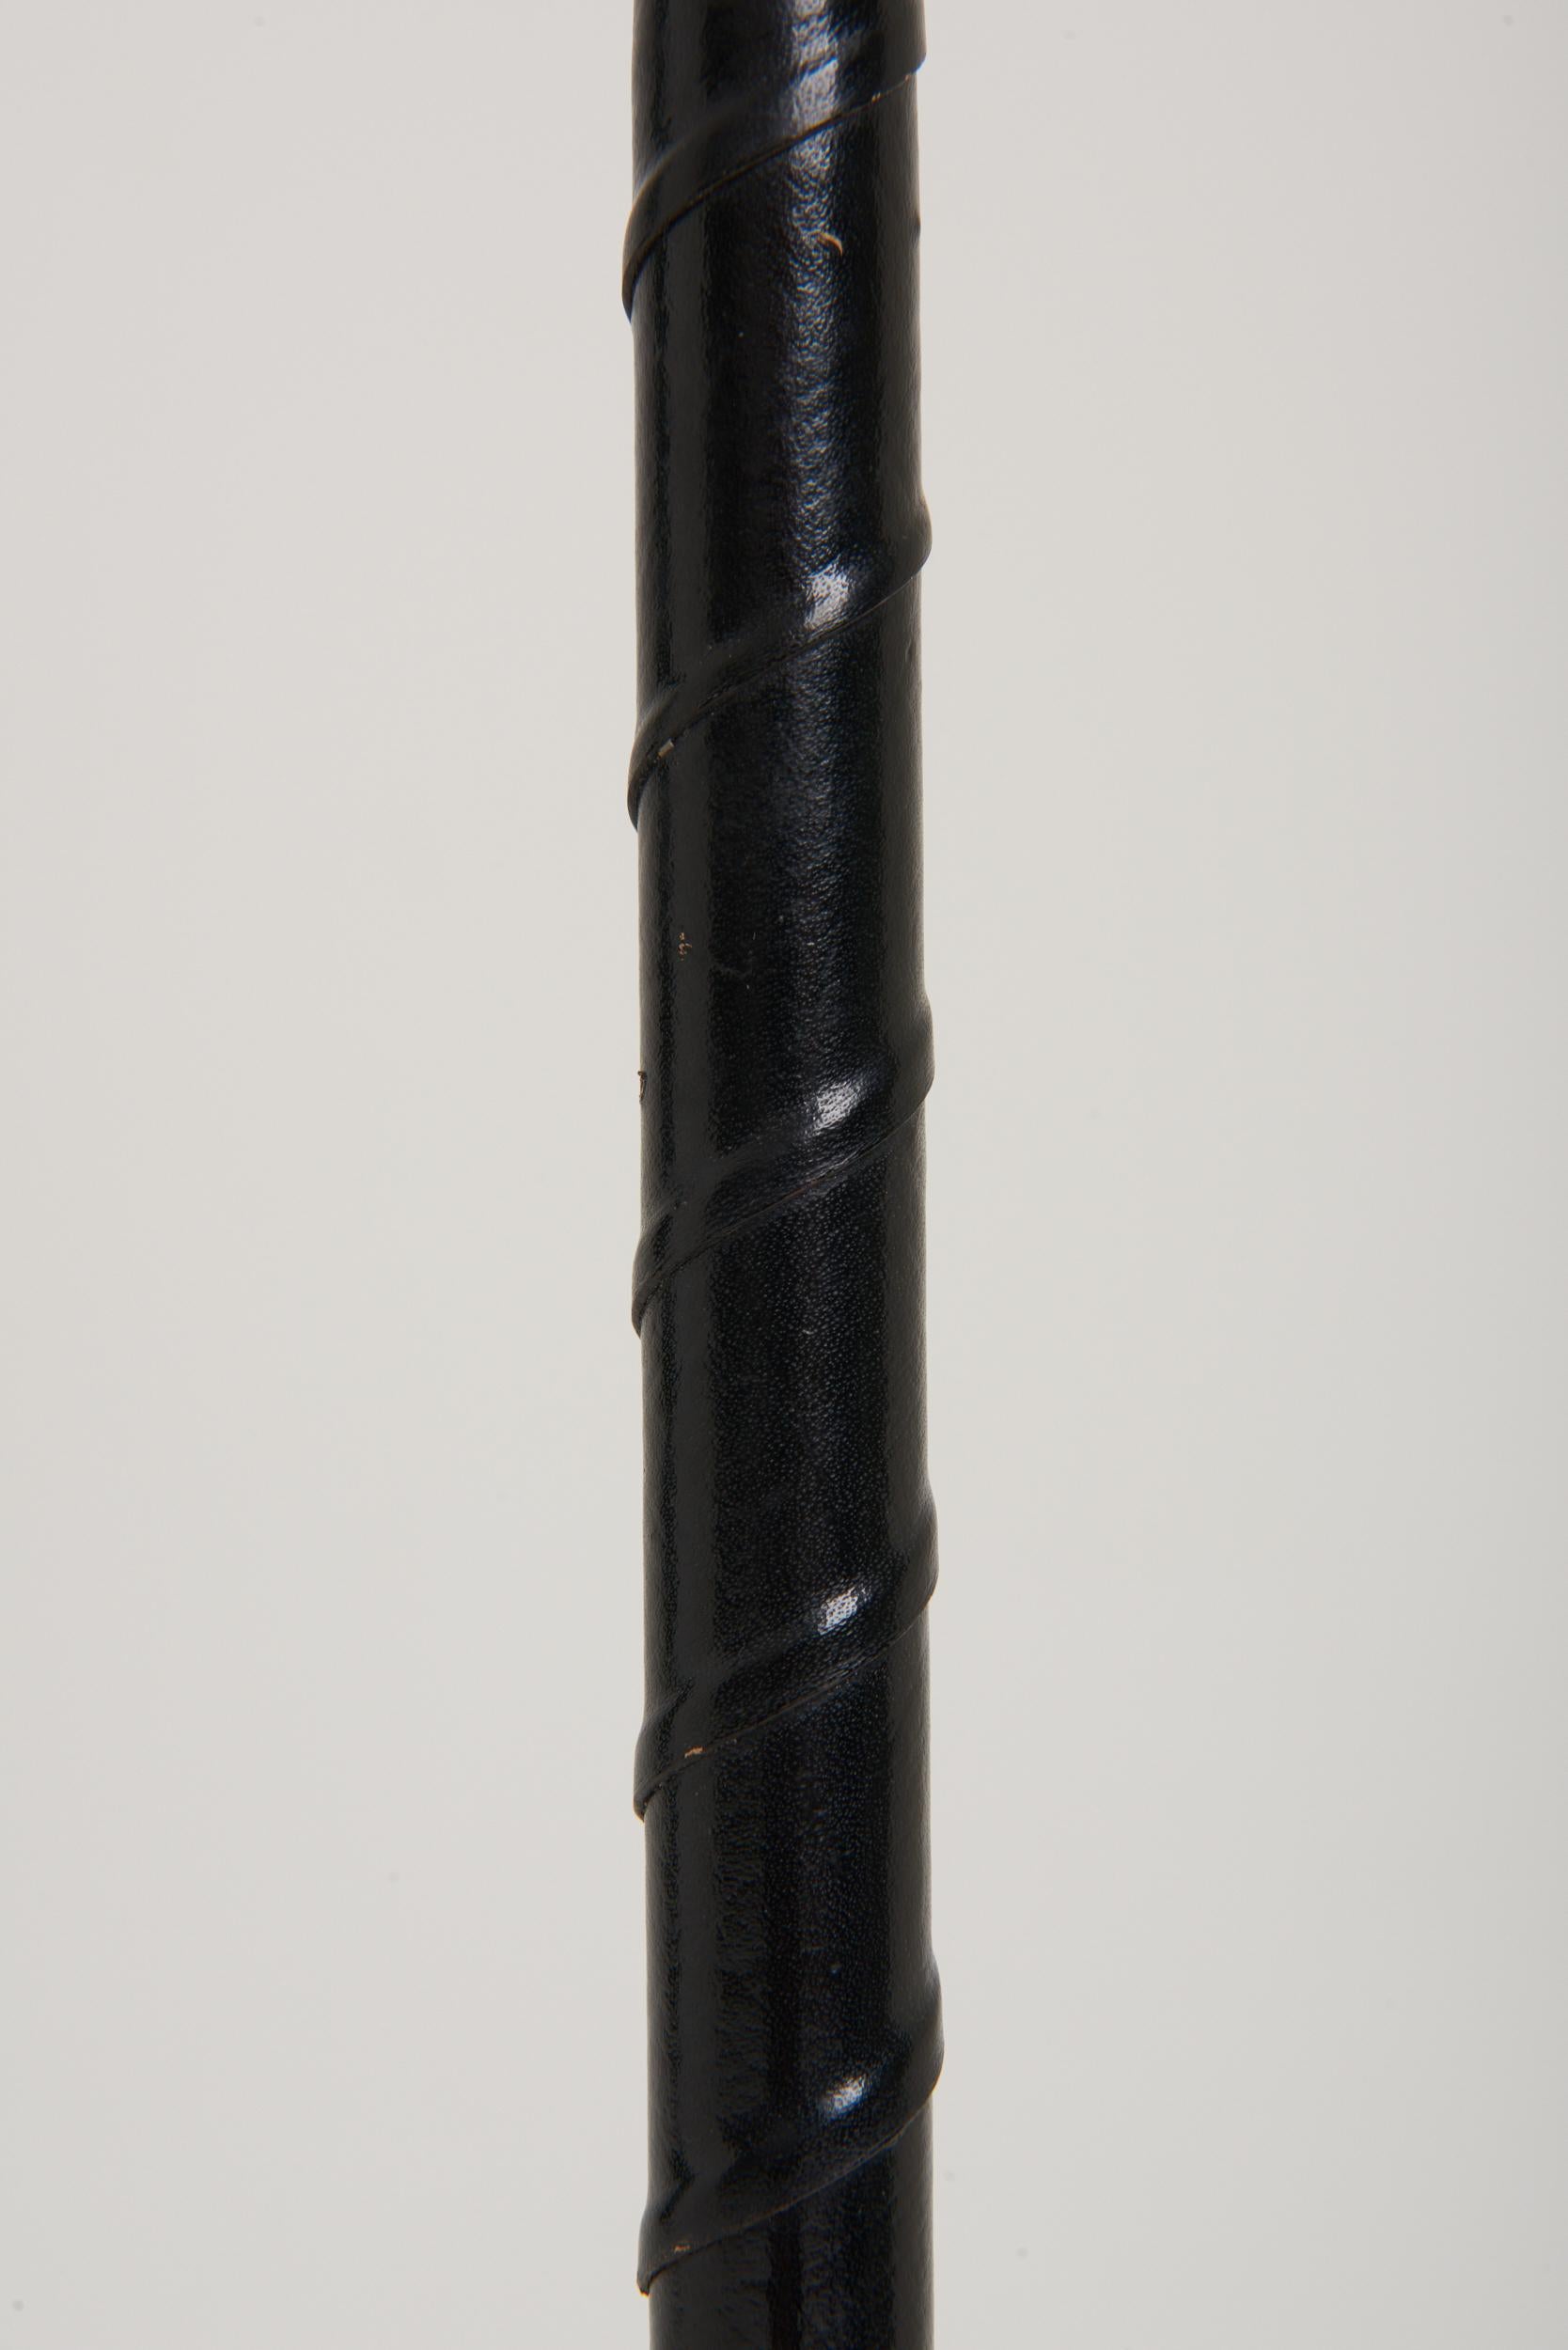 Eine Stehlampe aus schwarzem Leder und Nickel.
Schweden, drittes Quartal des 20. Jahrhunderts.
Maße: Mit dem Schirm: 155 cm Höhe und 45 cm Durchmesser.
Nur Lampenfuß: 130 cm Höhe und 25 cm Durchmesser.